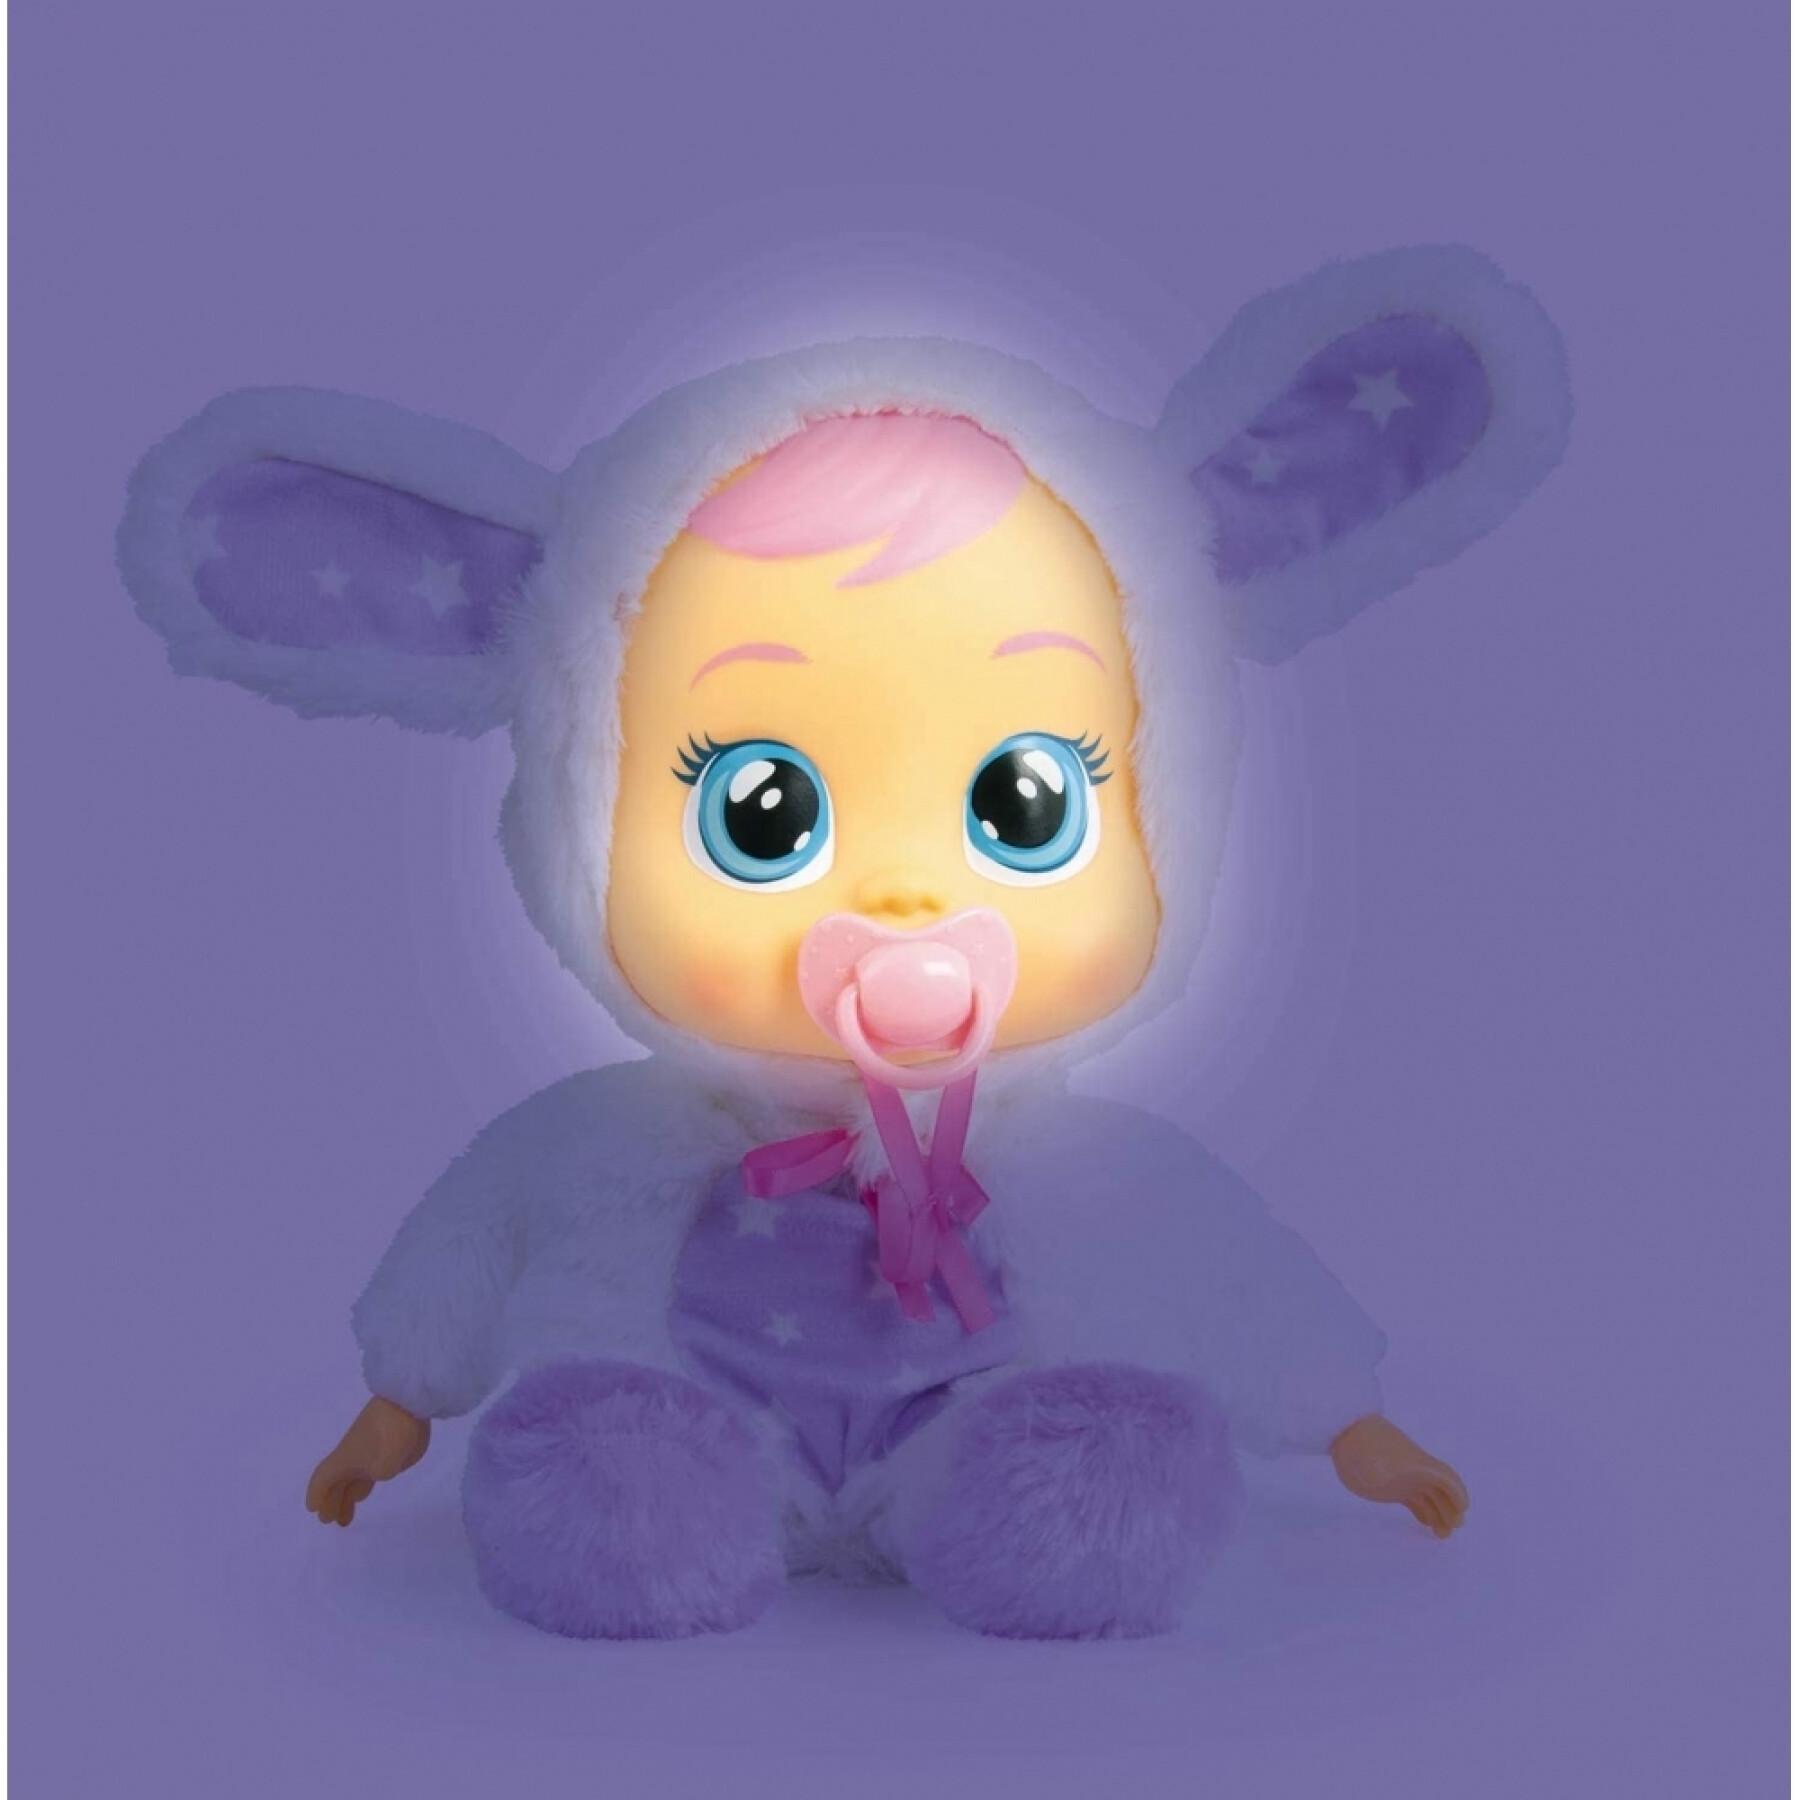 Boneca IMC Toys Coney sueños Luz lágrimas